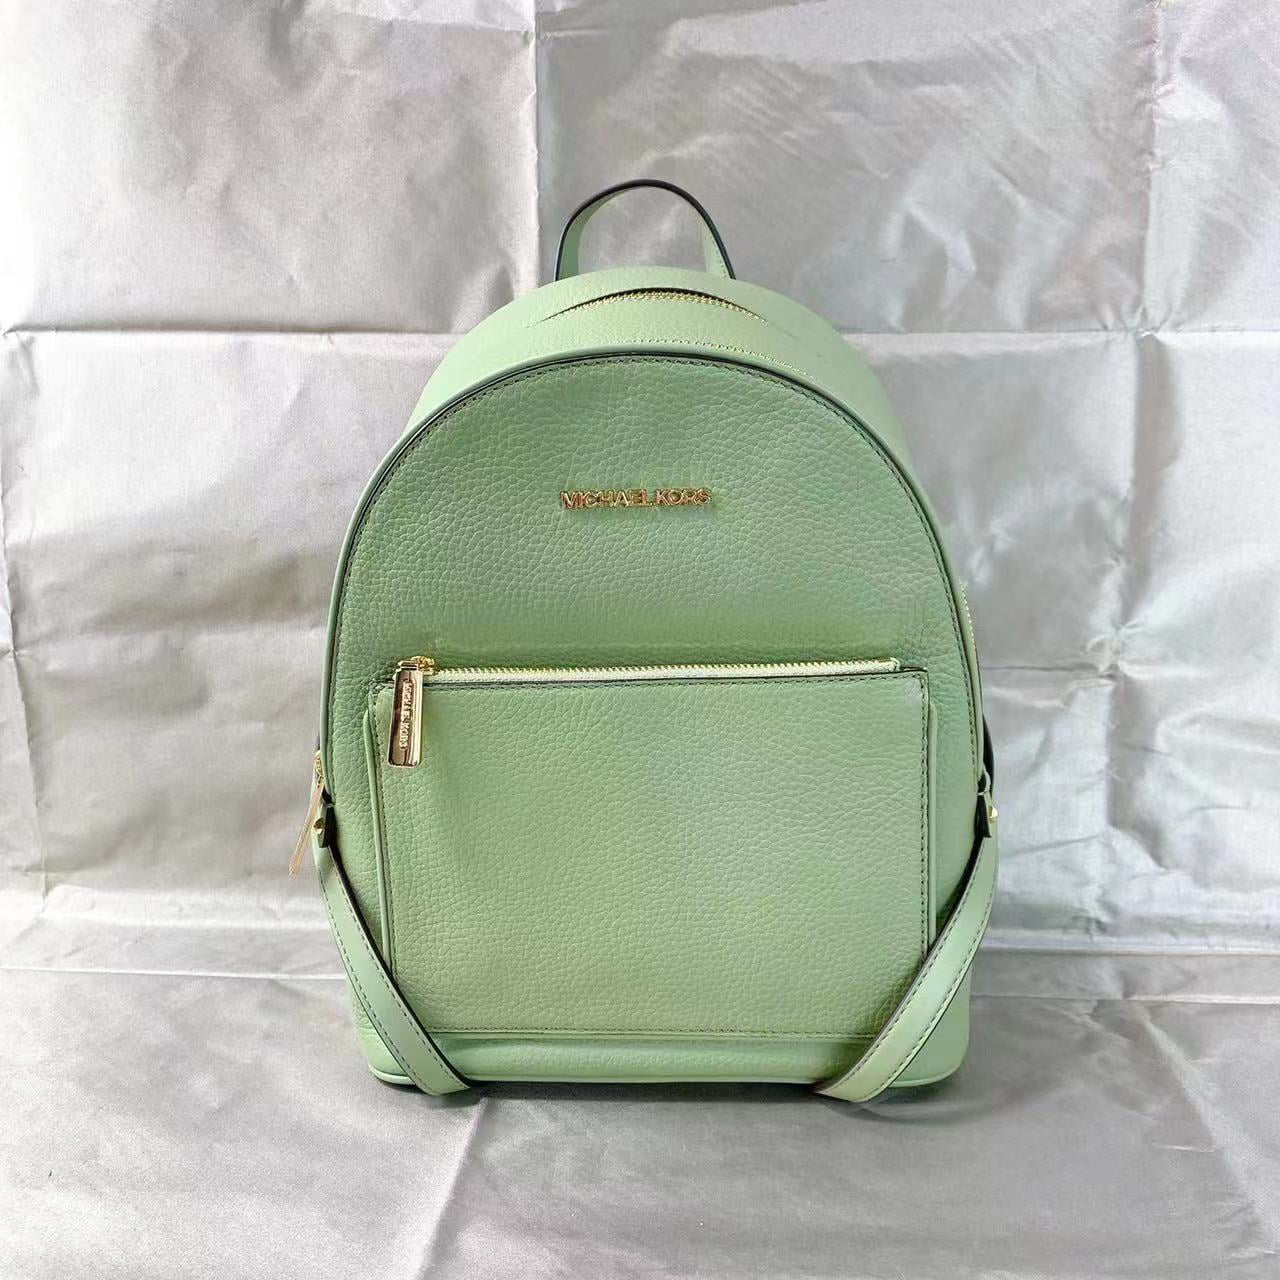 Michael Kors Adina Medium Backpack Light Sage Green Pebbled Leather ...